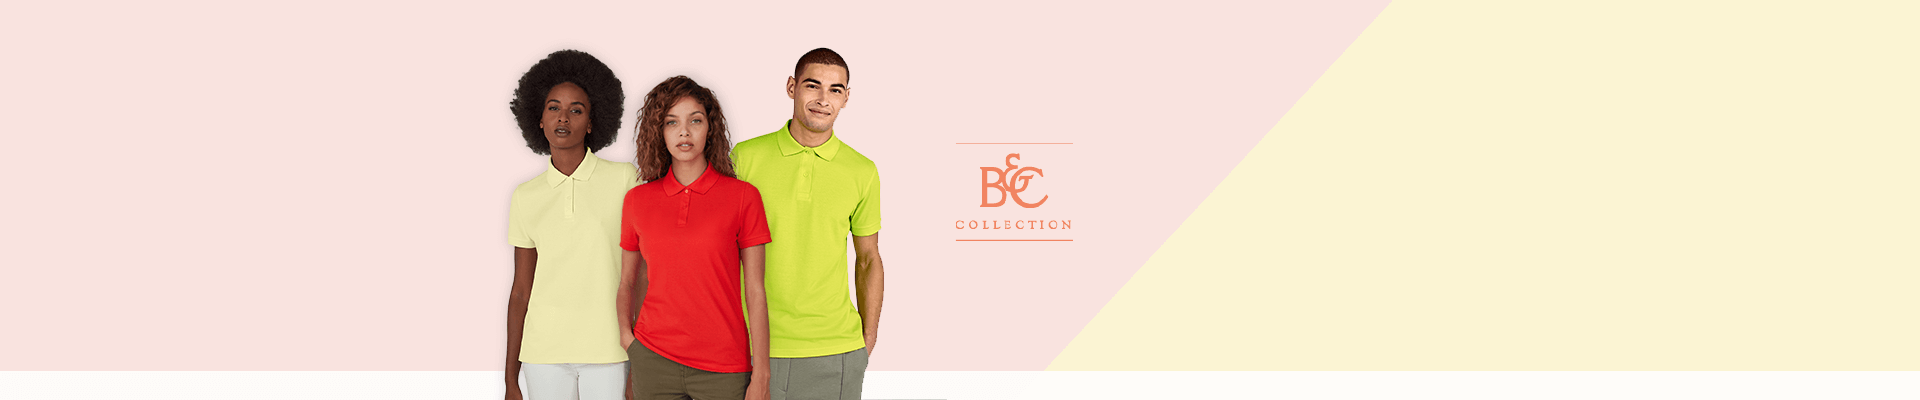 Fargerike poloskjorte-nyheter fra B&C.
Nå kan du sikre deg et prøvesett til spesialpris.